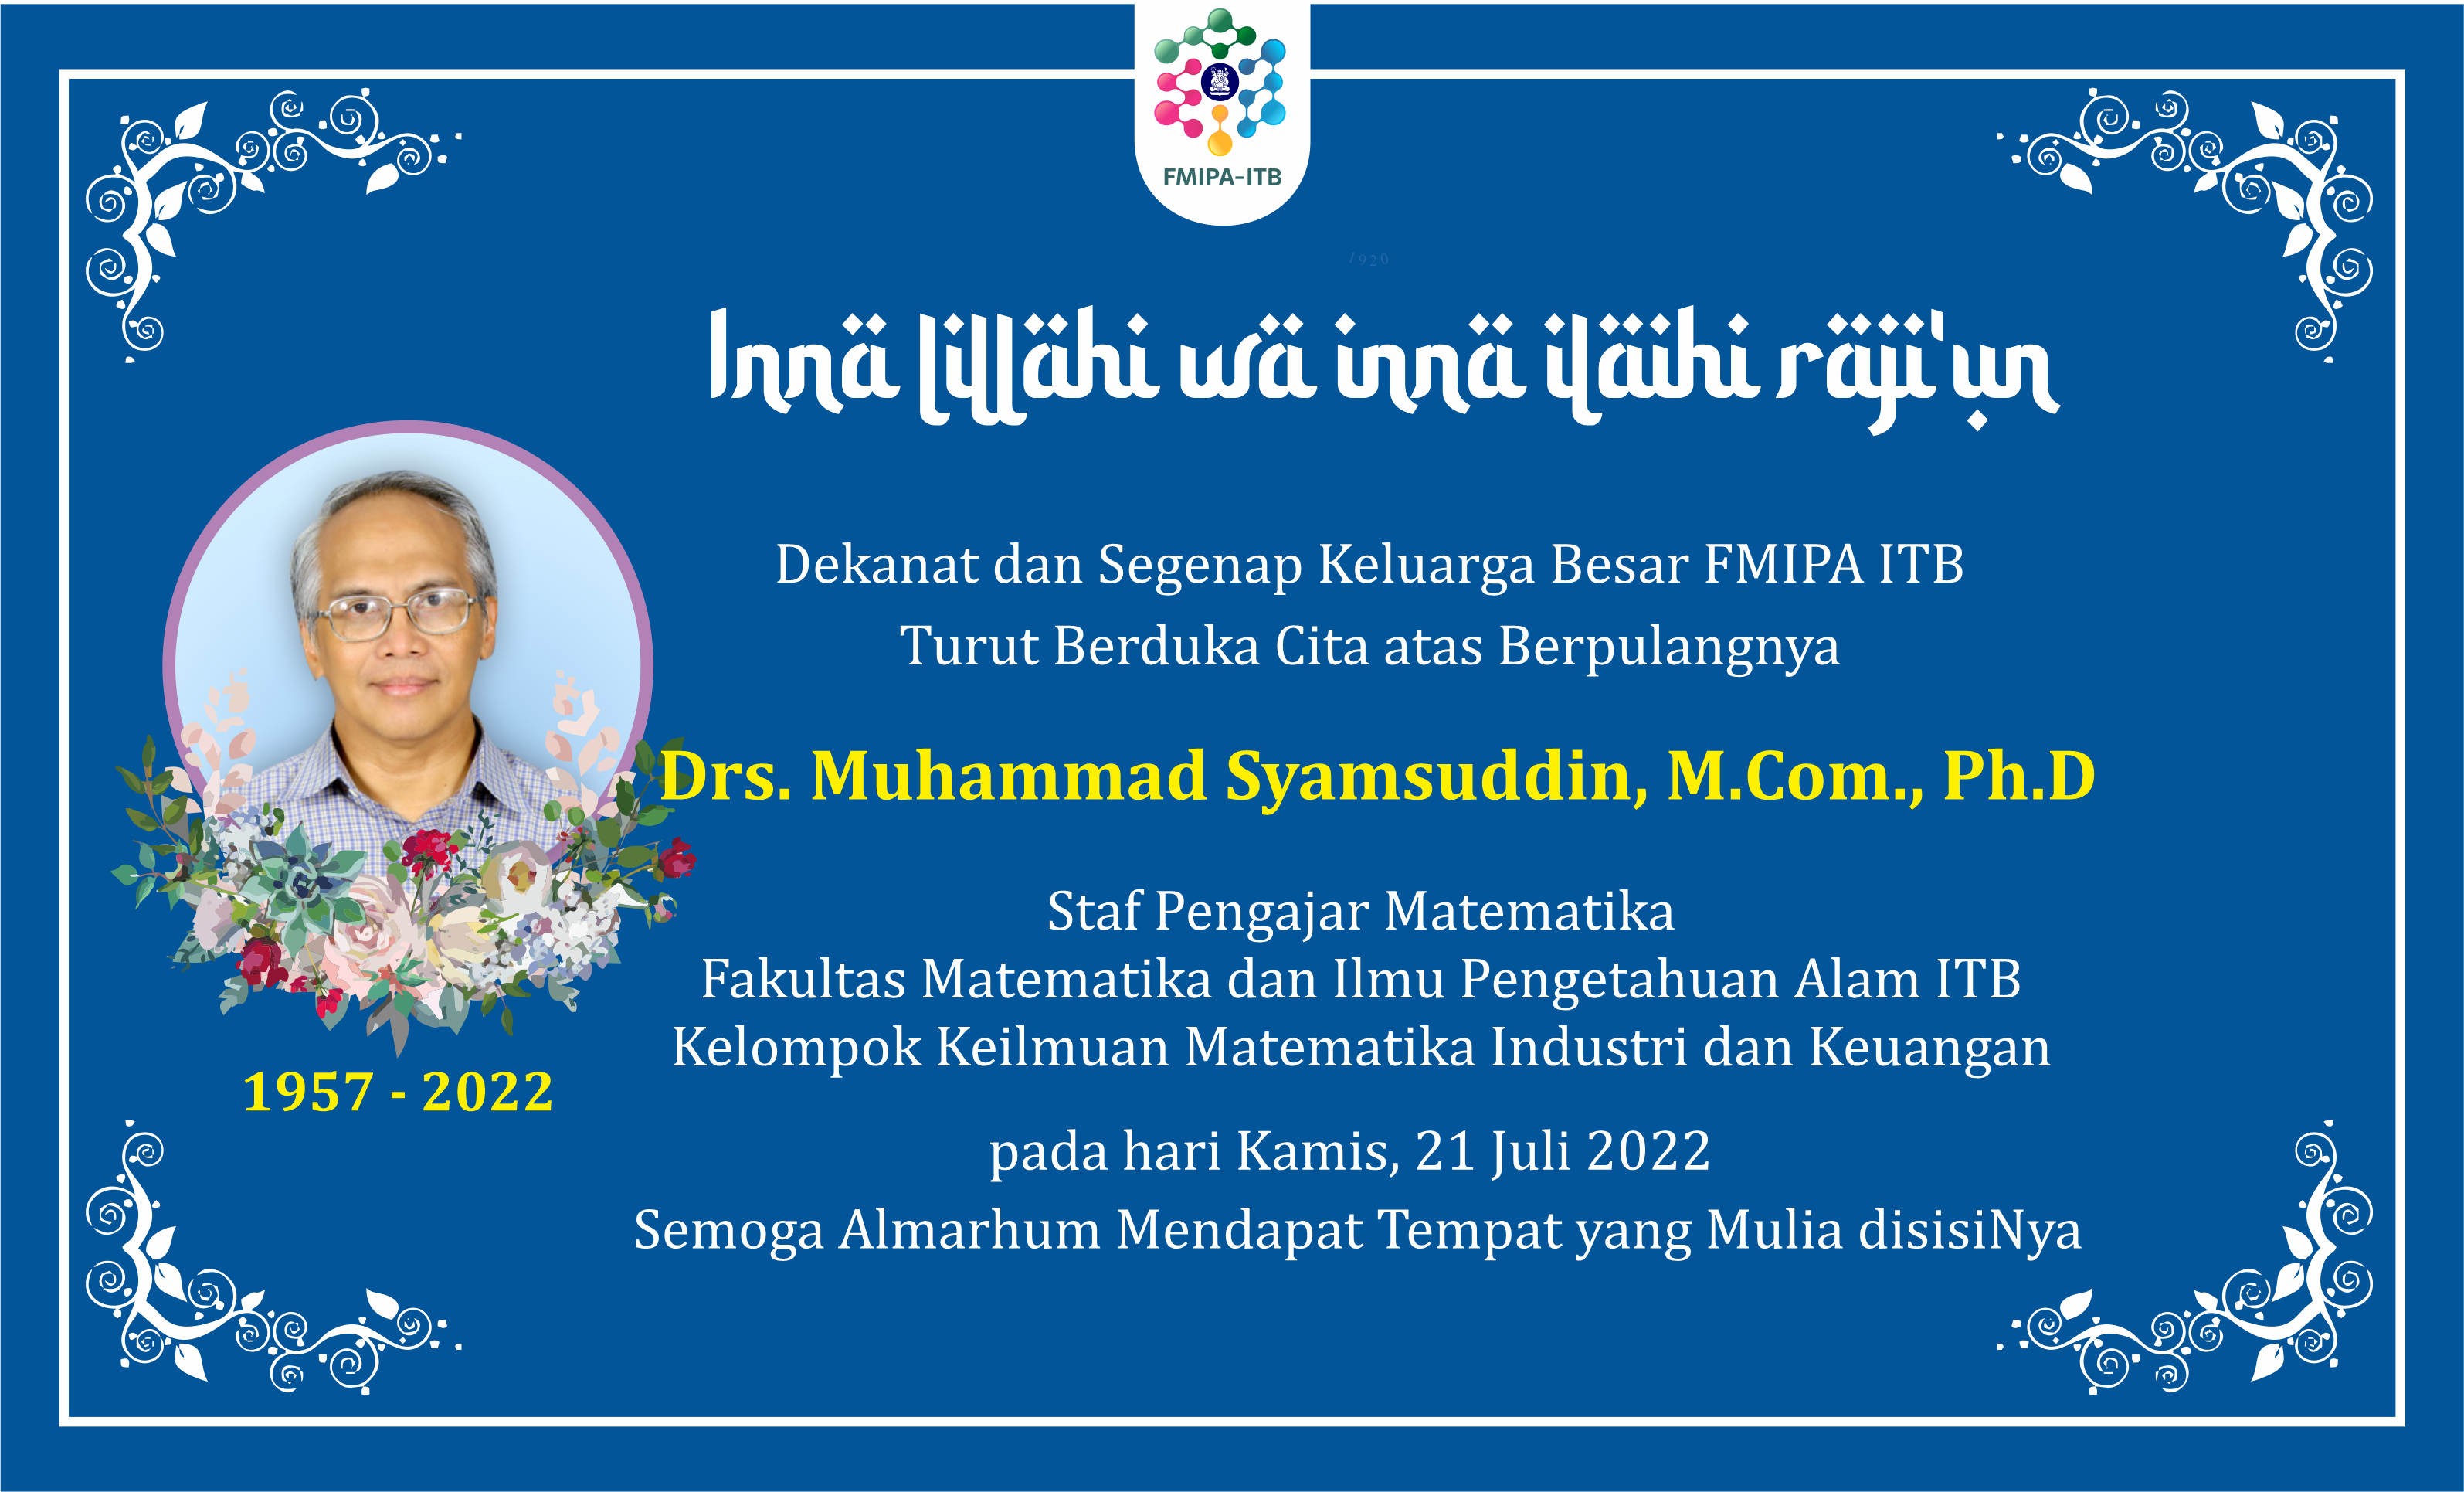 OBITUARI: Drs. Muhammad Syamsuddin, M.Com., Ph.D, Staf Pengajar Program Studi Matematika FMIPA ITB